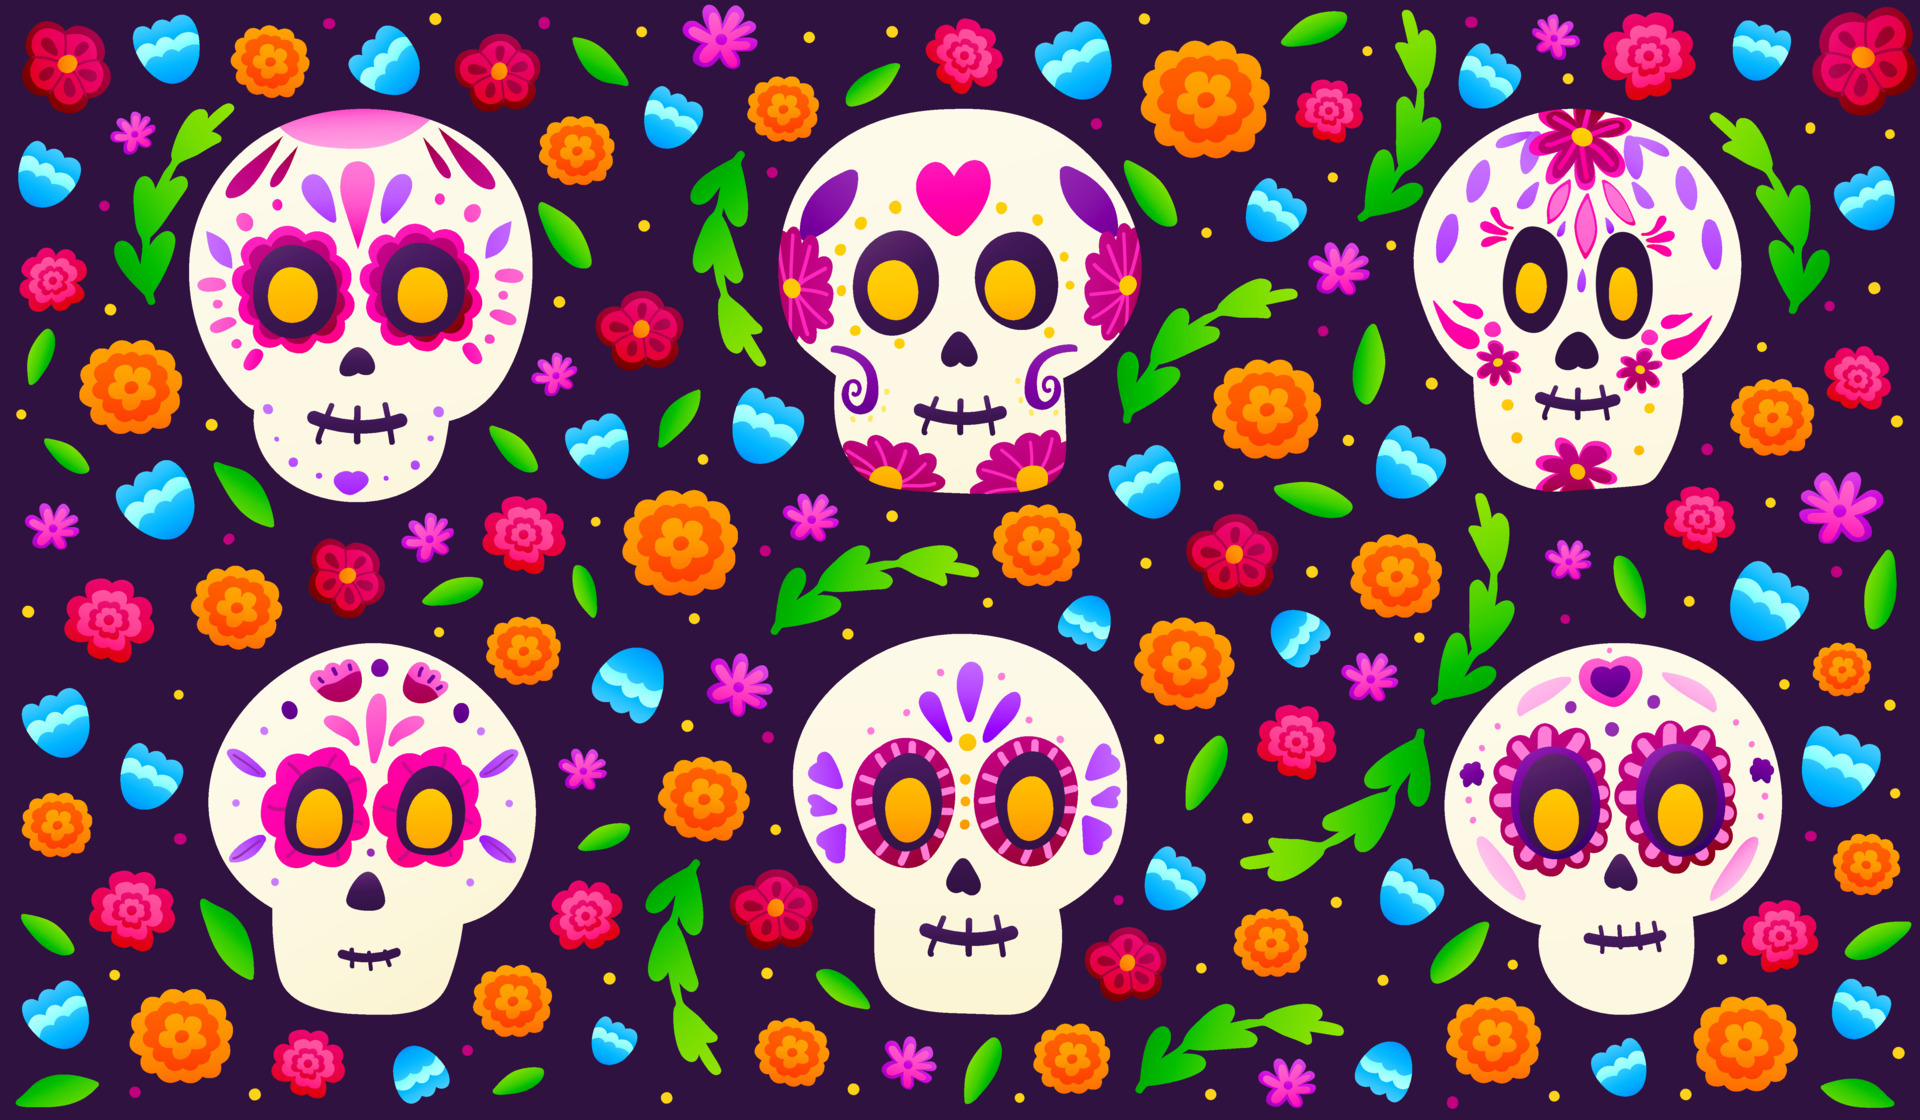 calaveras de azúcar con flores de colores sobre fondo oscuro, pancarta para  el día de fiesta mexicano dia de los muertos en estilo de dibujos animados,  adornado floral con caléndulas 10809605 Vector